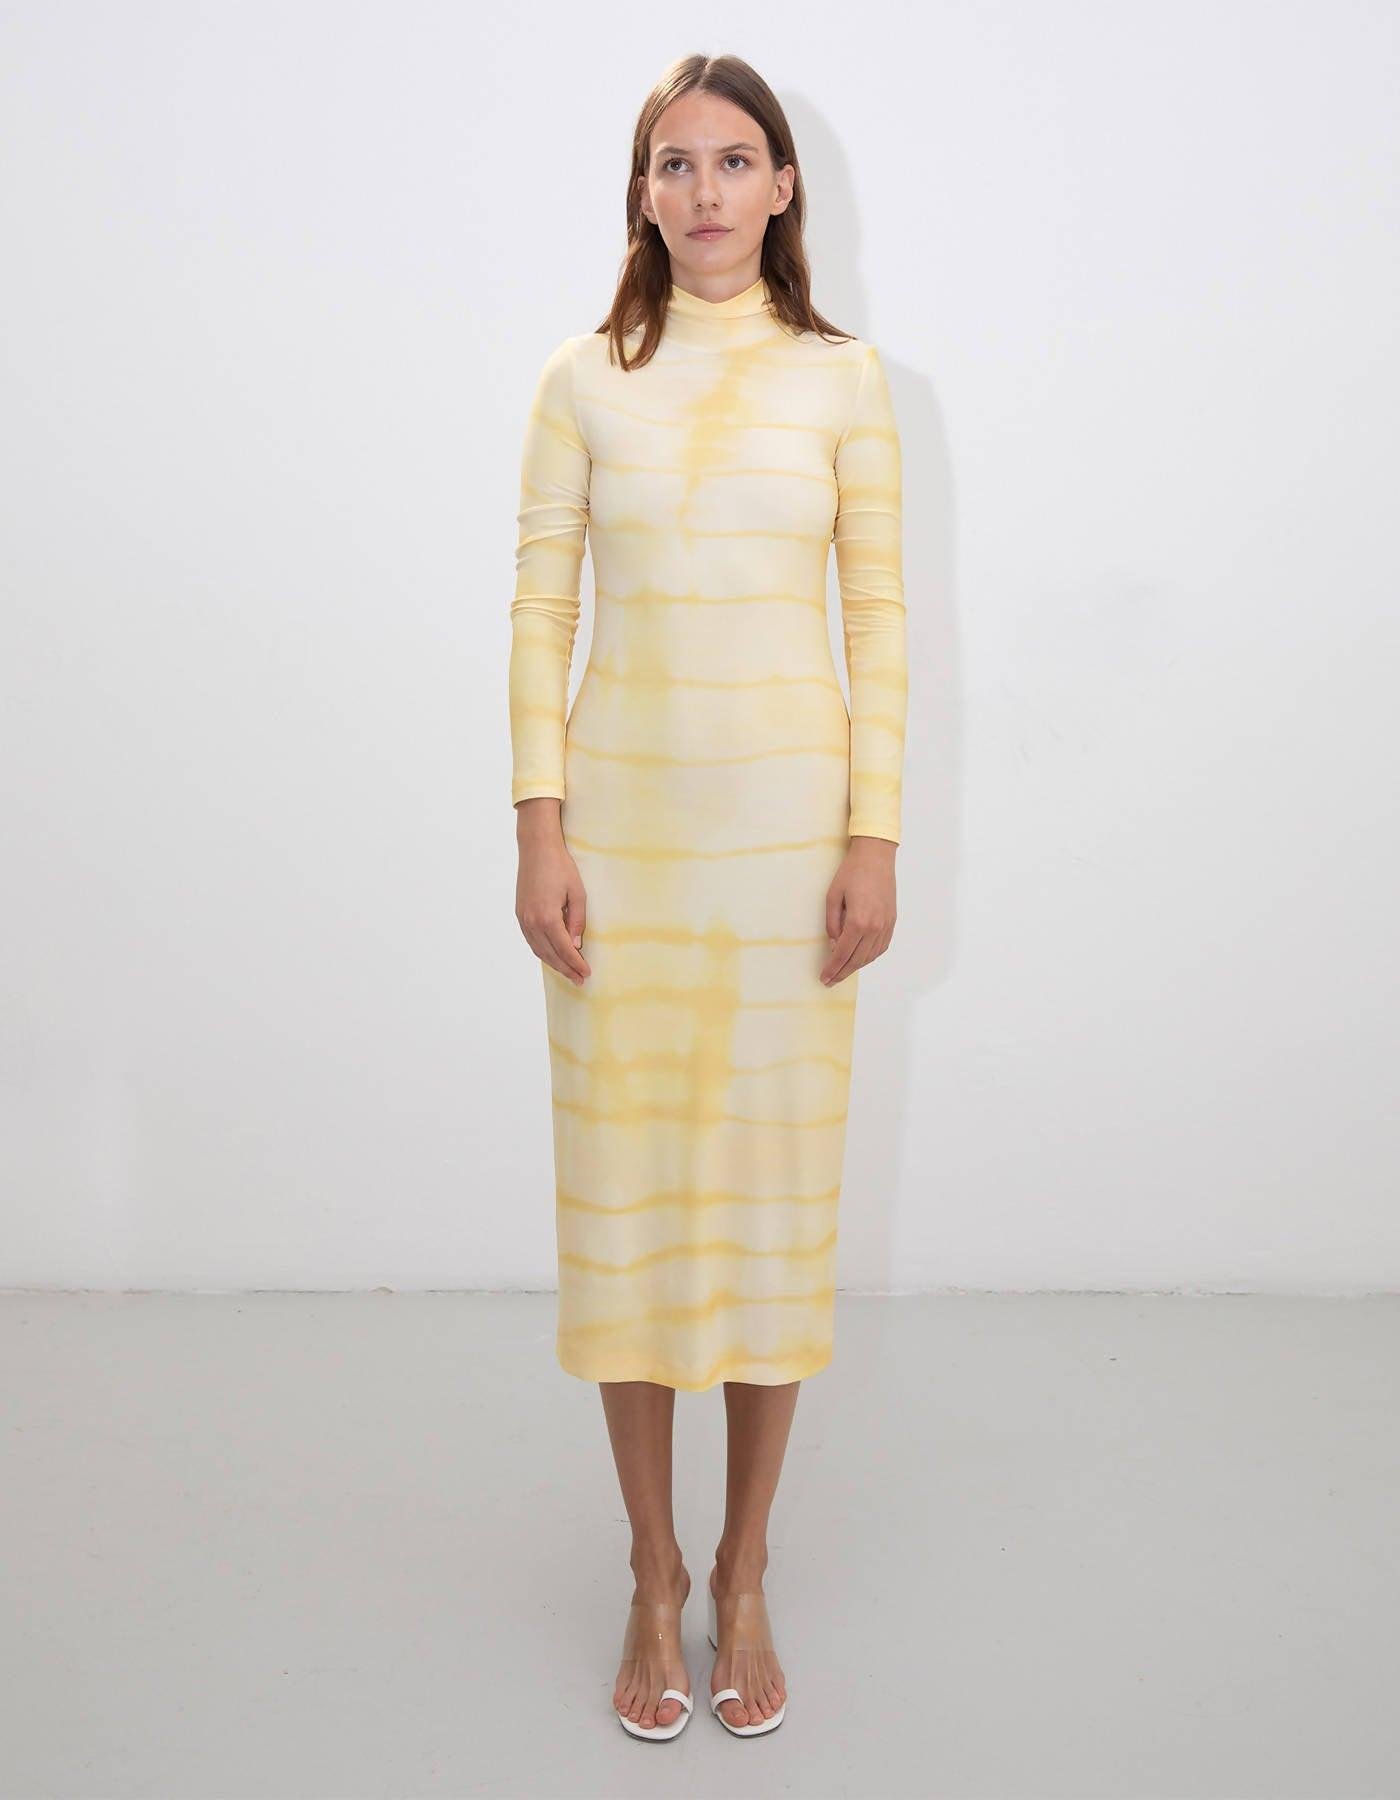 Yellow Tie Dye Turtleneck Dress by RIONA TREACY